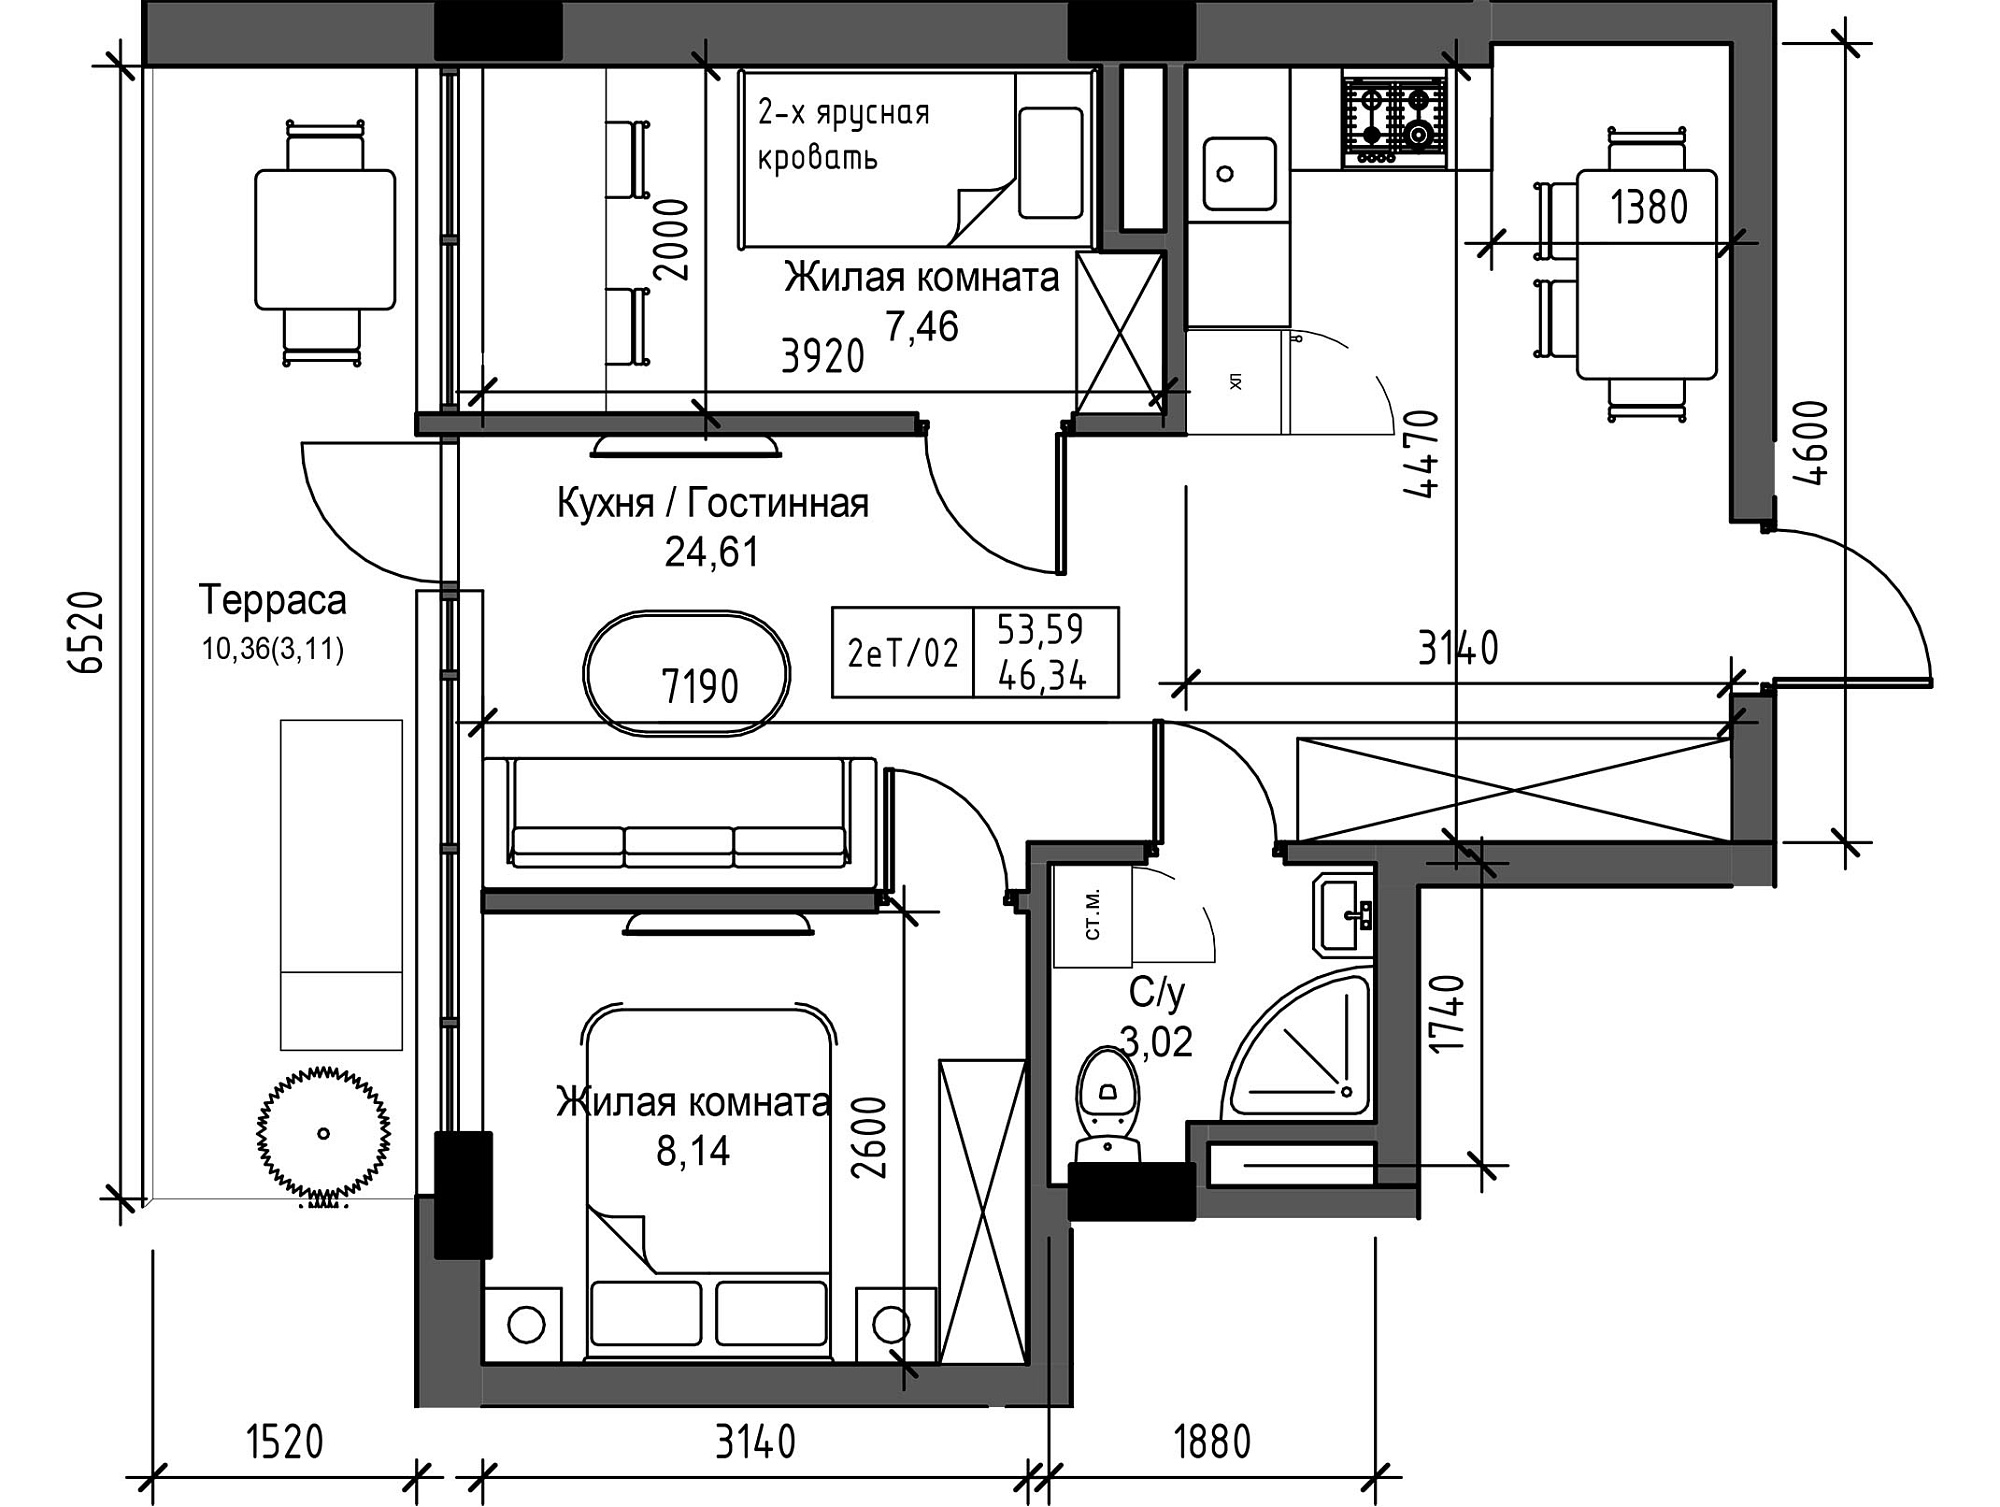 Планировка 2-к квартира площей 43.32м2, UM-003-11/0118.